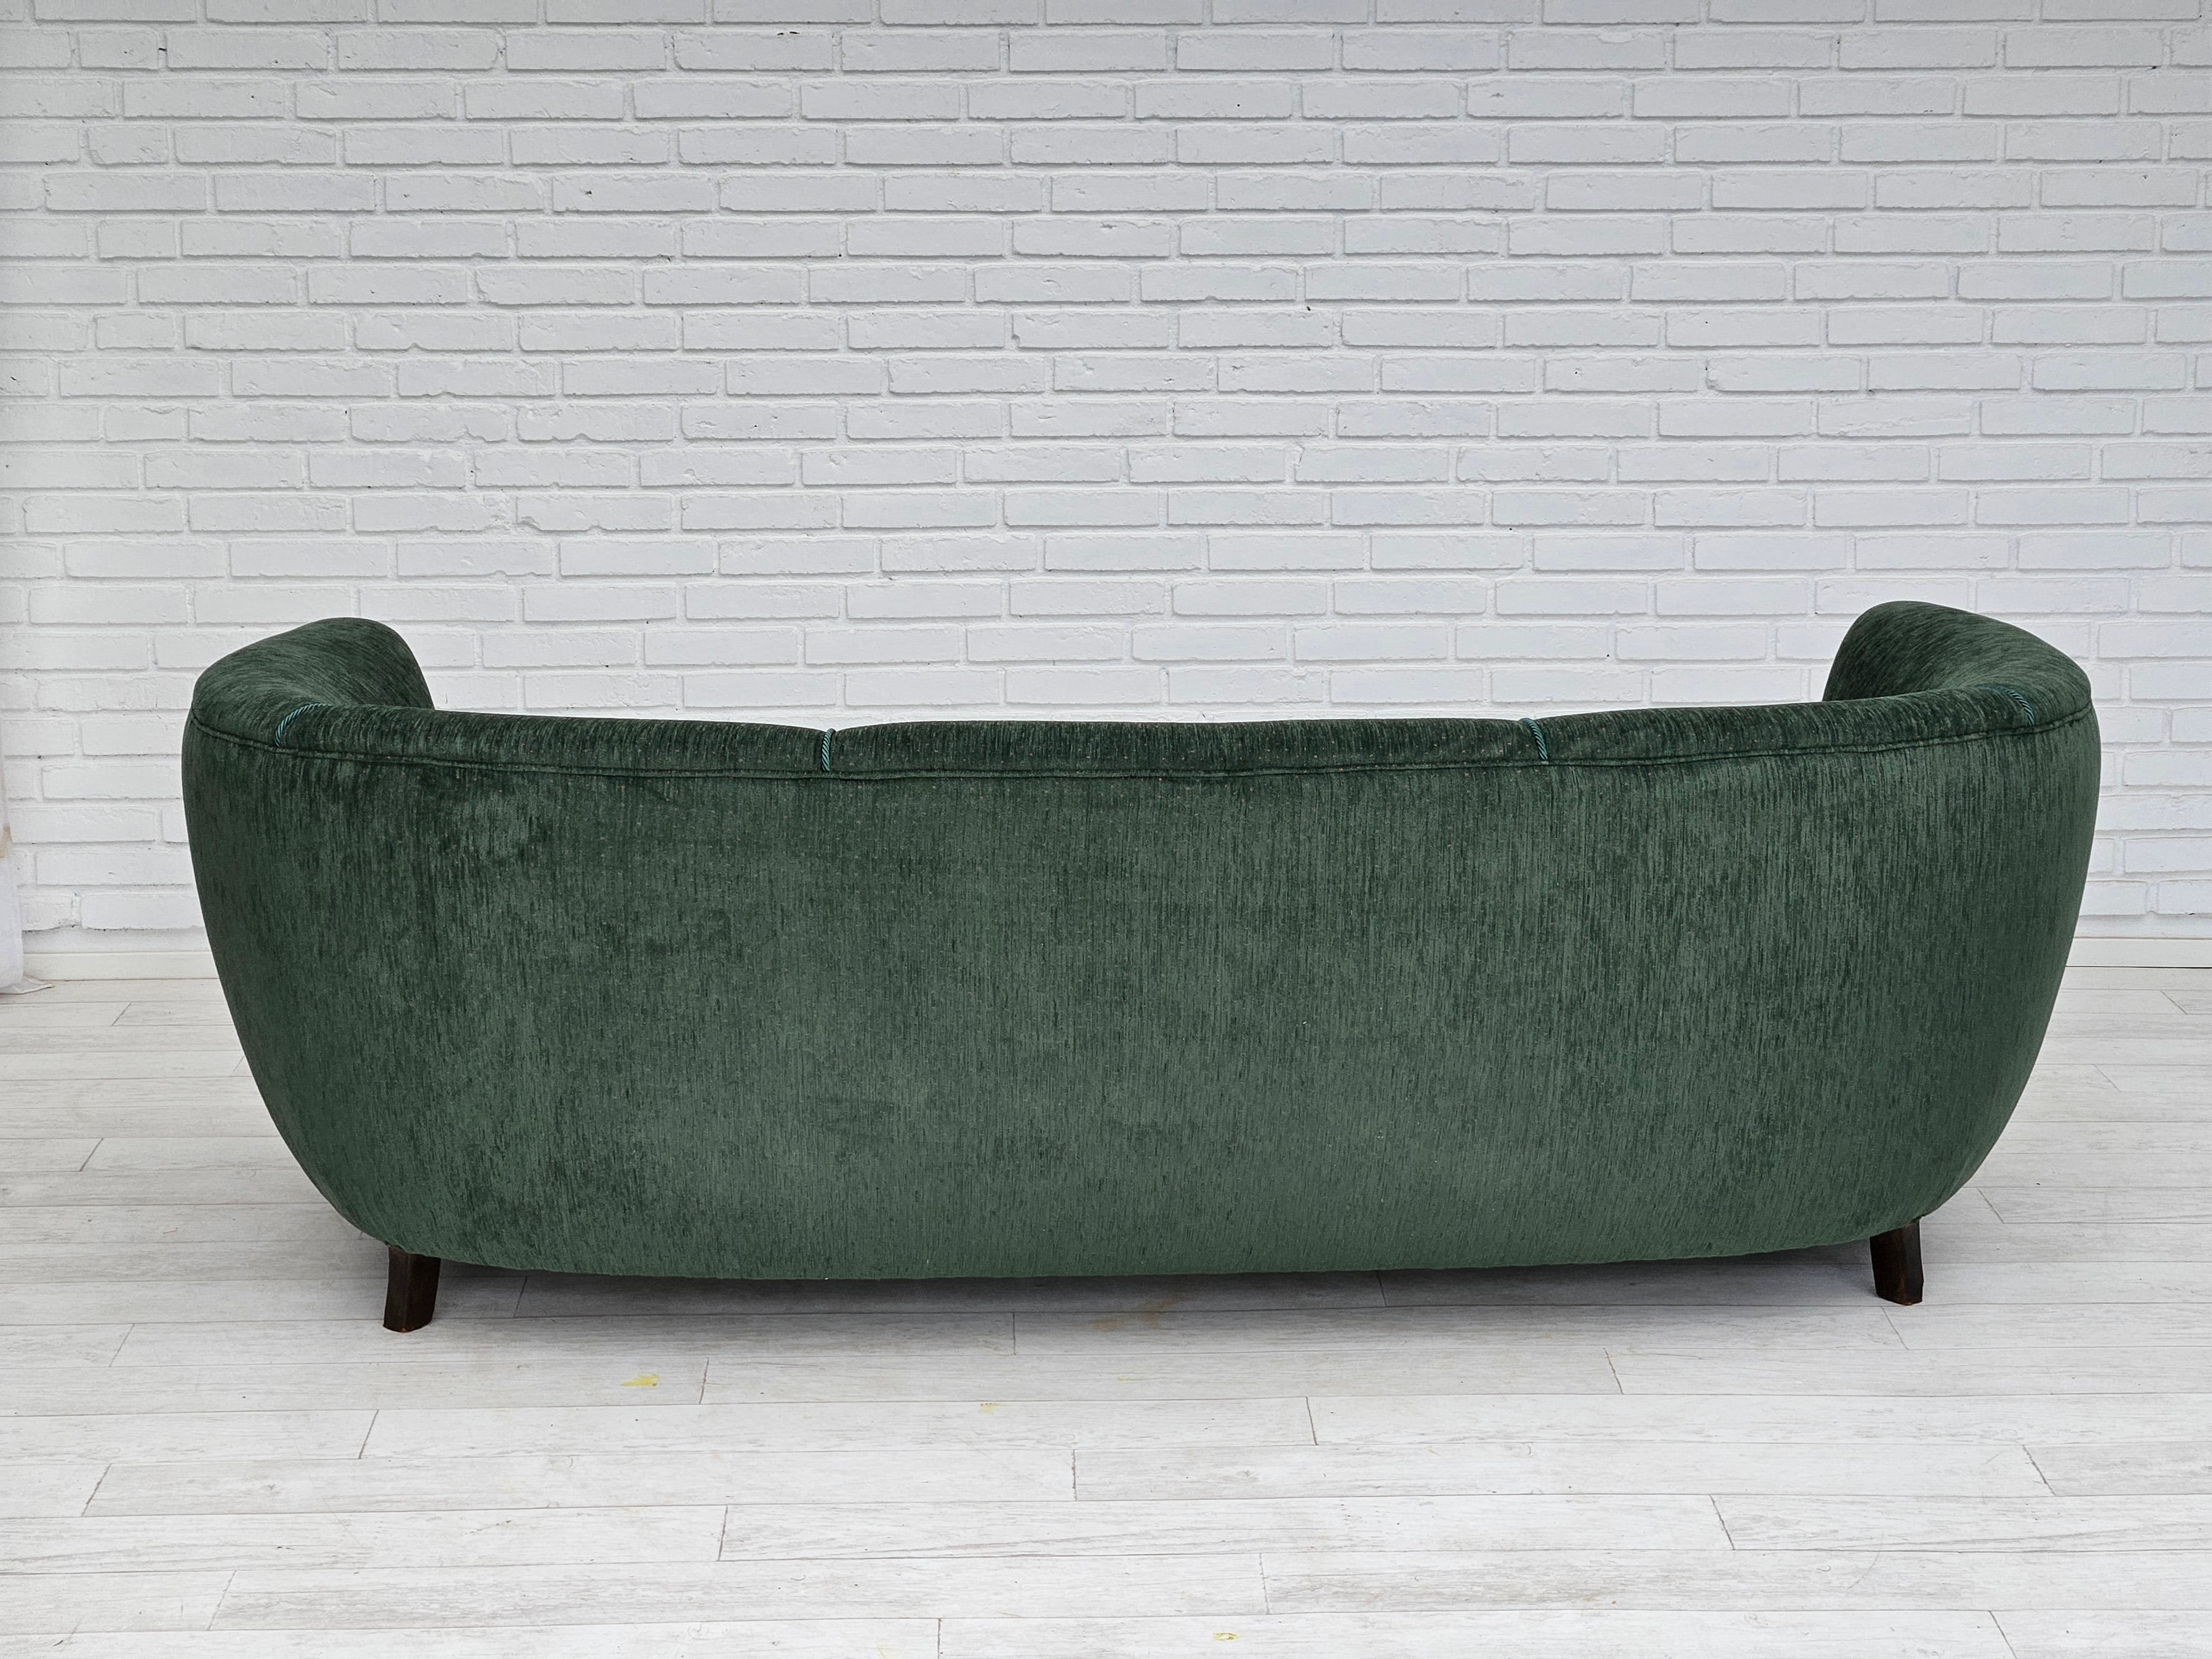 1960erne, Dansk design, renoveret 3 pers. "Banana" sofa, vintage velour.